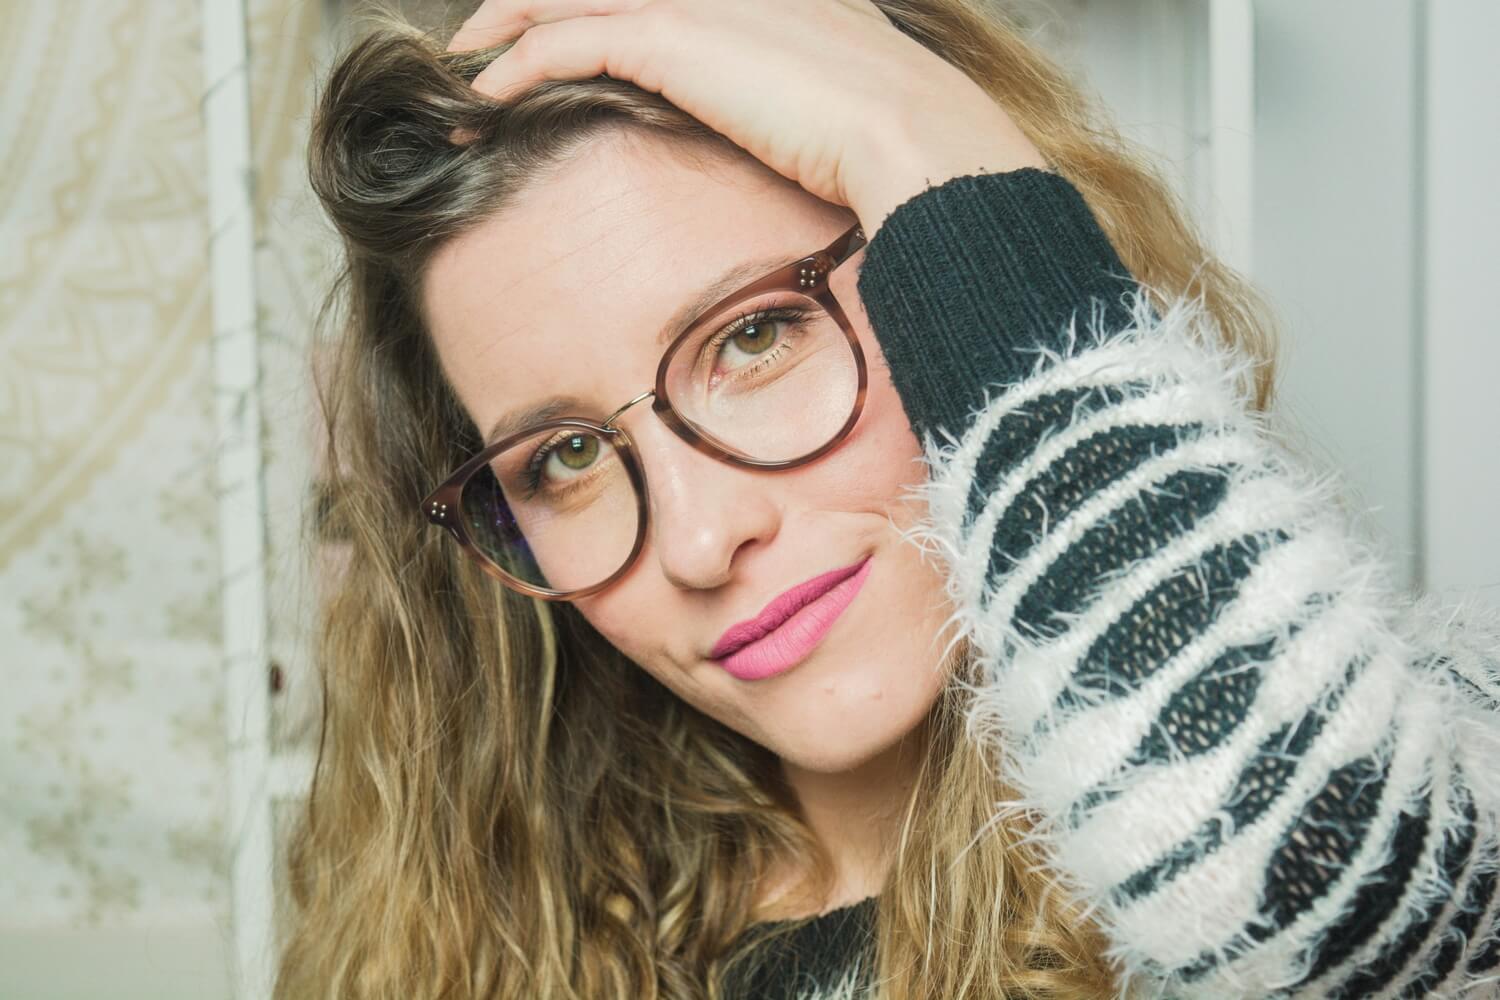 Tuto makeup pour savoir comment se maquiller quand on porte des lunettes | happinesscoco.com